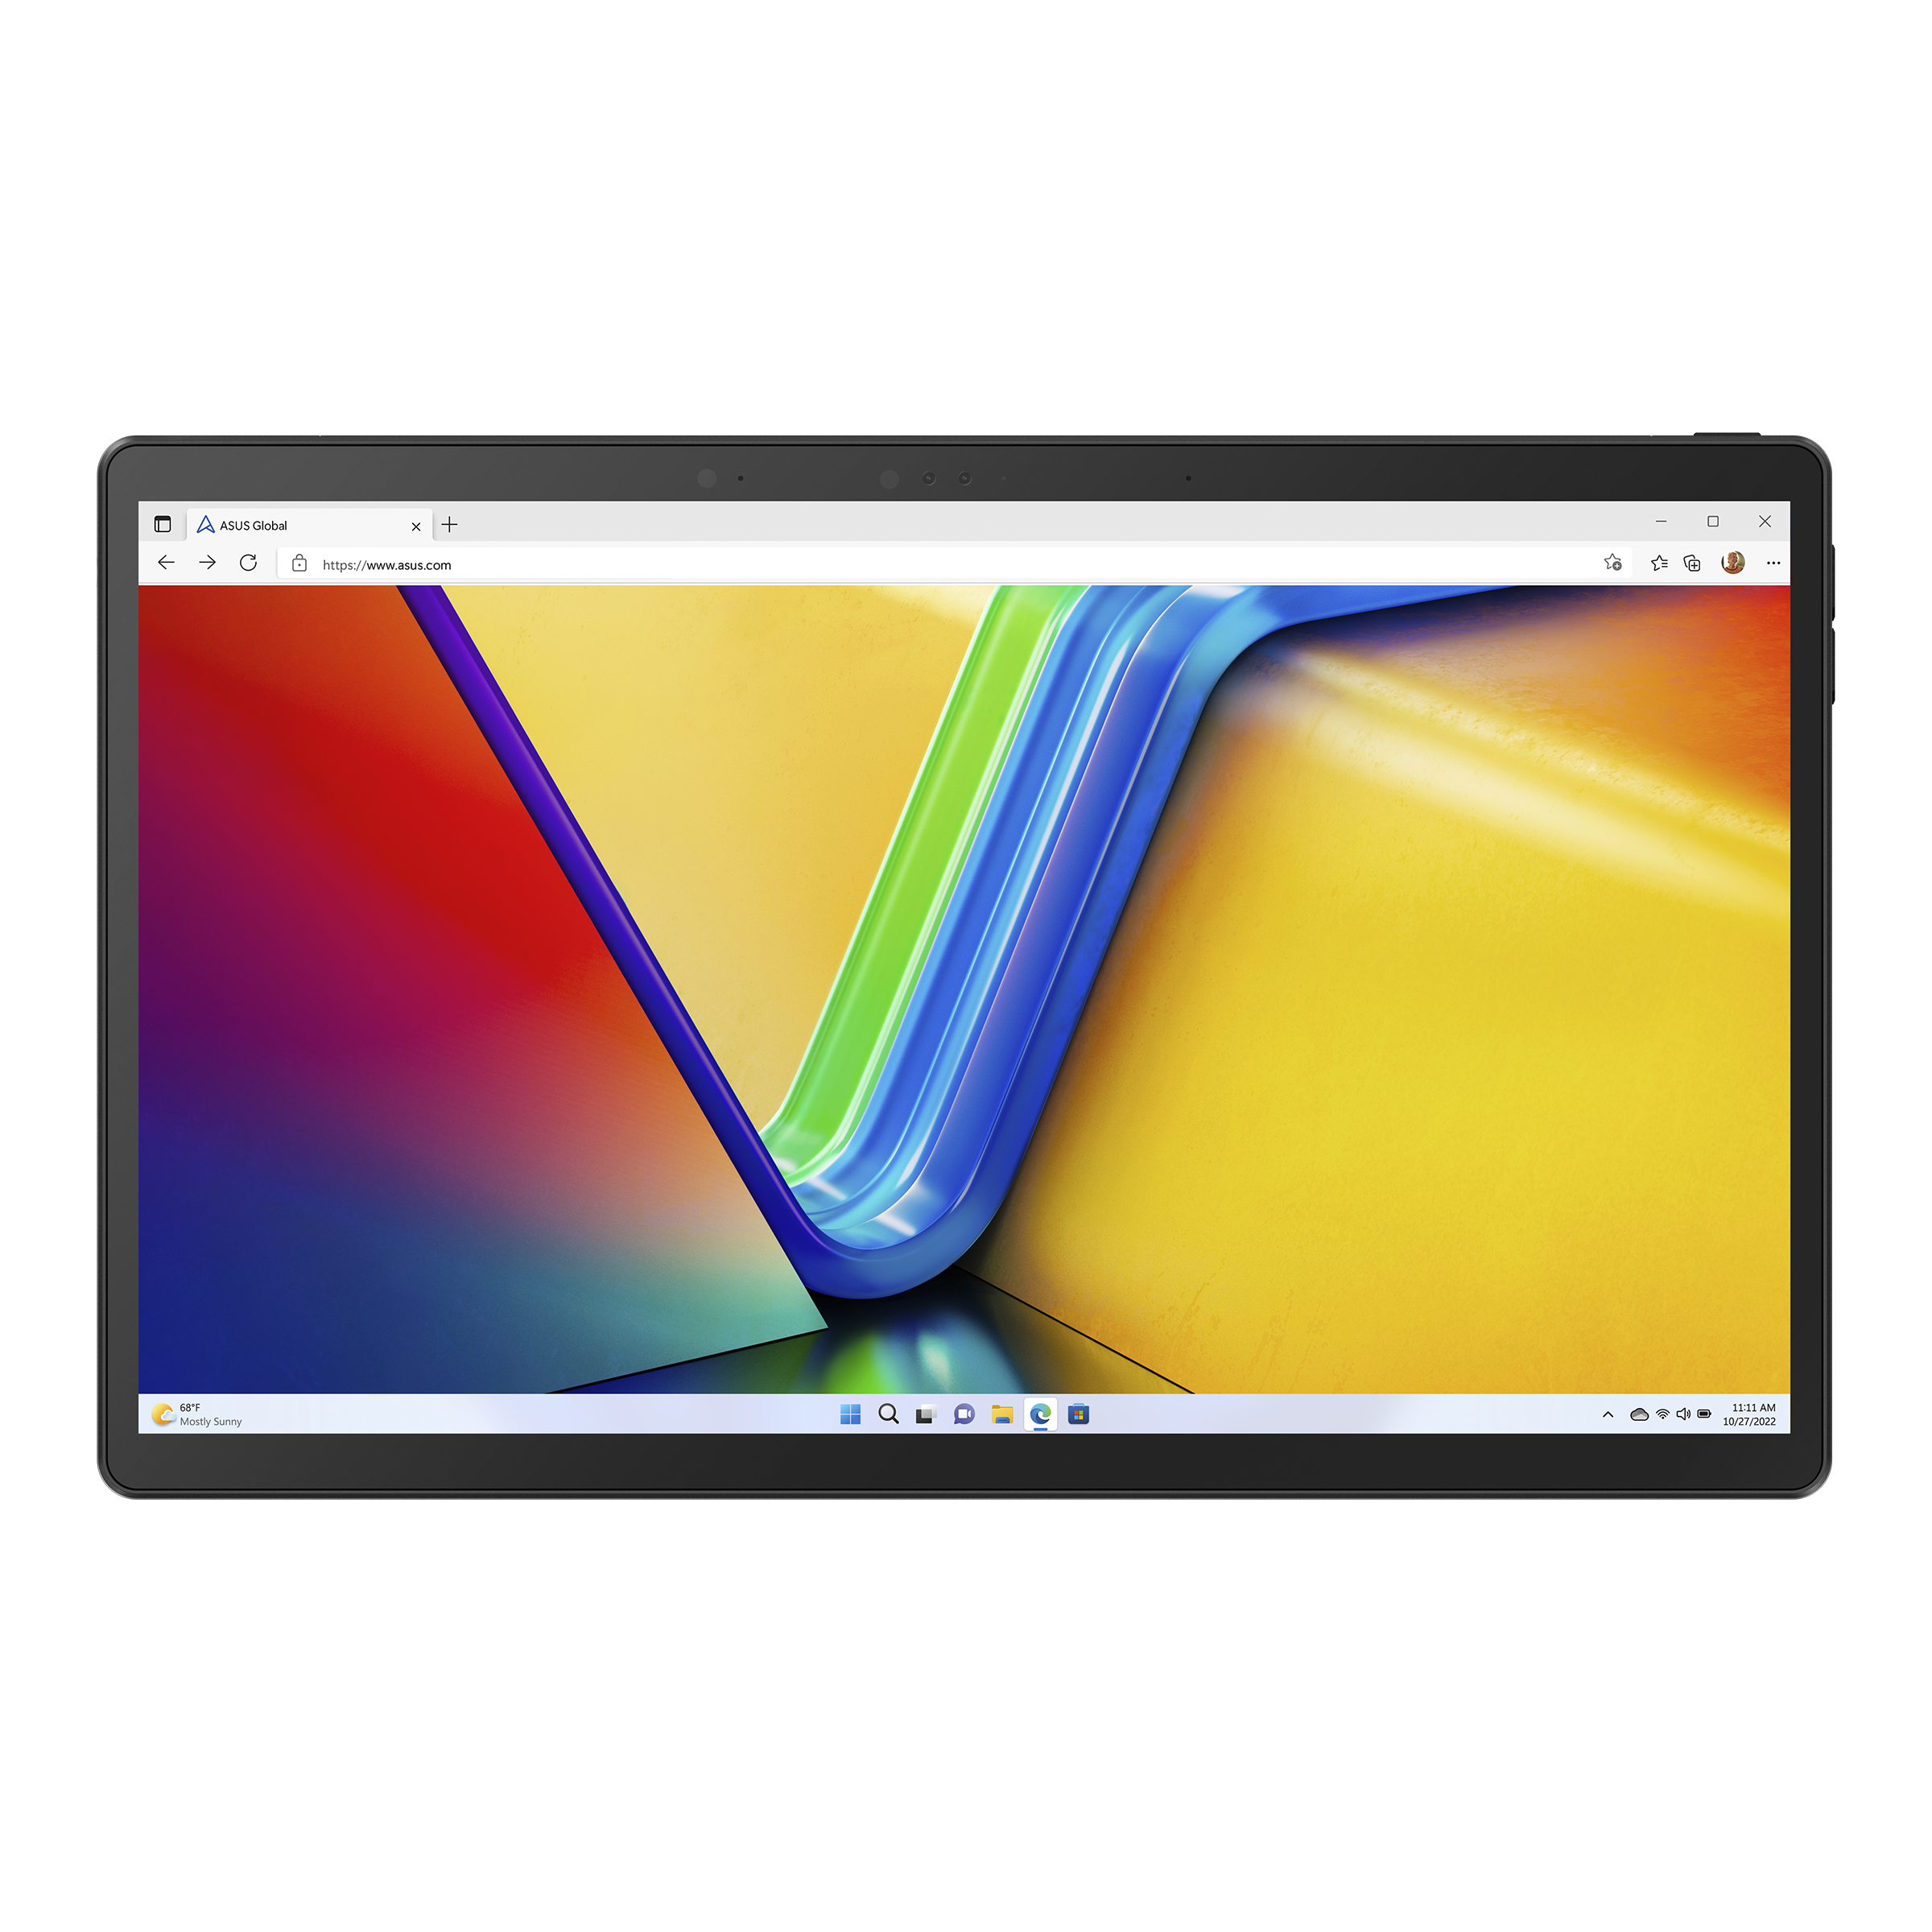 Asus Vivobook Slate 13 OLED, un ordinateur tablette avec écran